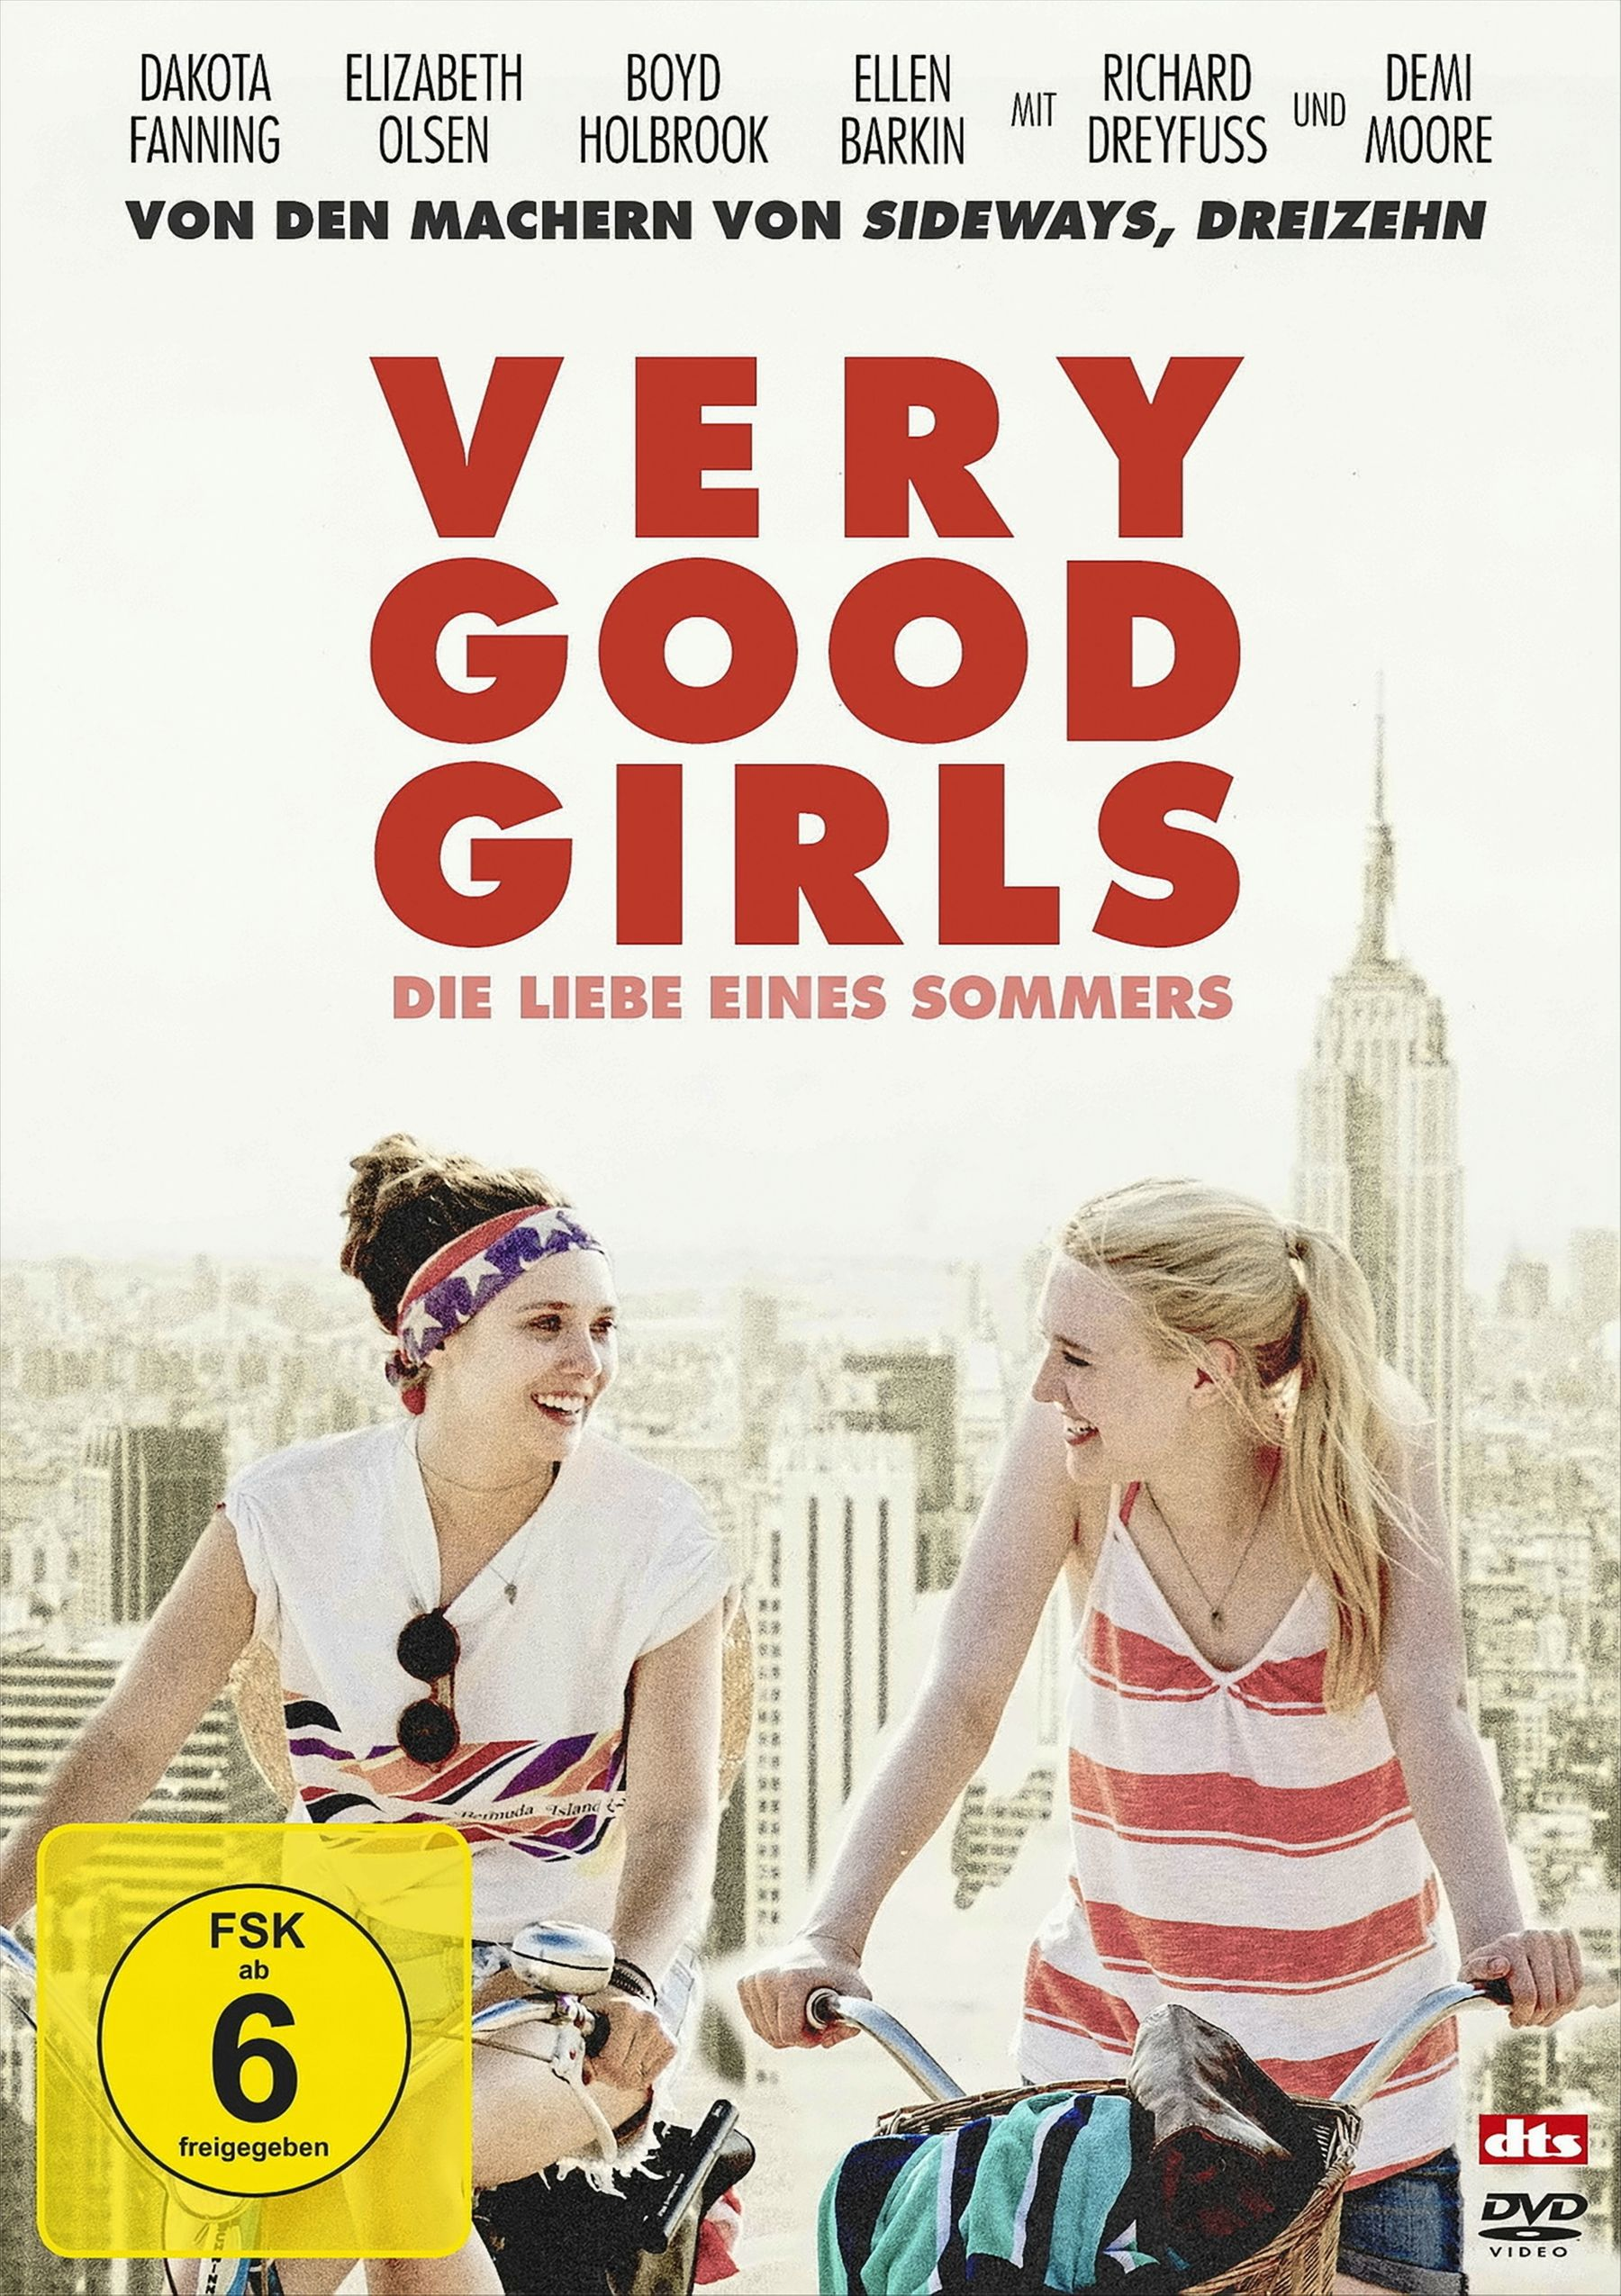 - DVD Sommers Girls eines Good Liebe Die Very